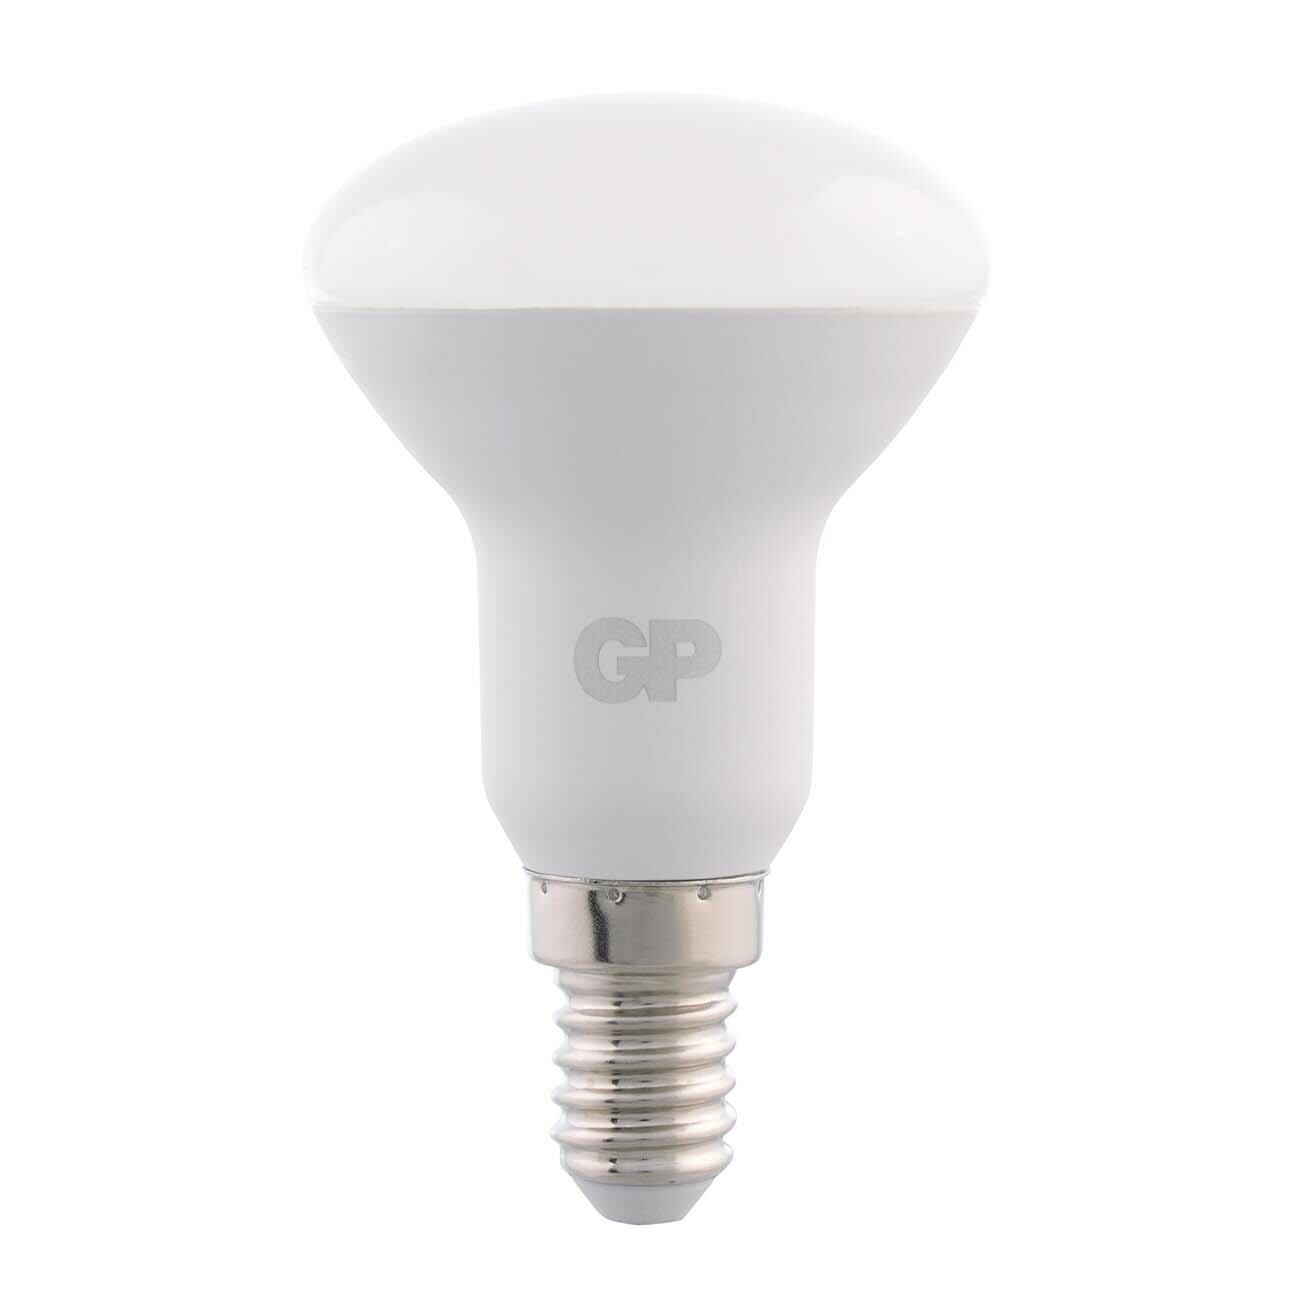 Лампа GP Lighting R50  LED 5.5 Вт цоколь Е14 теплый свет (2700К)